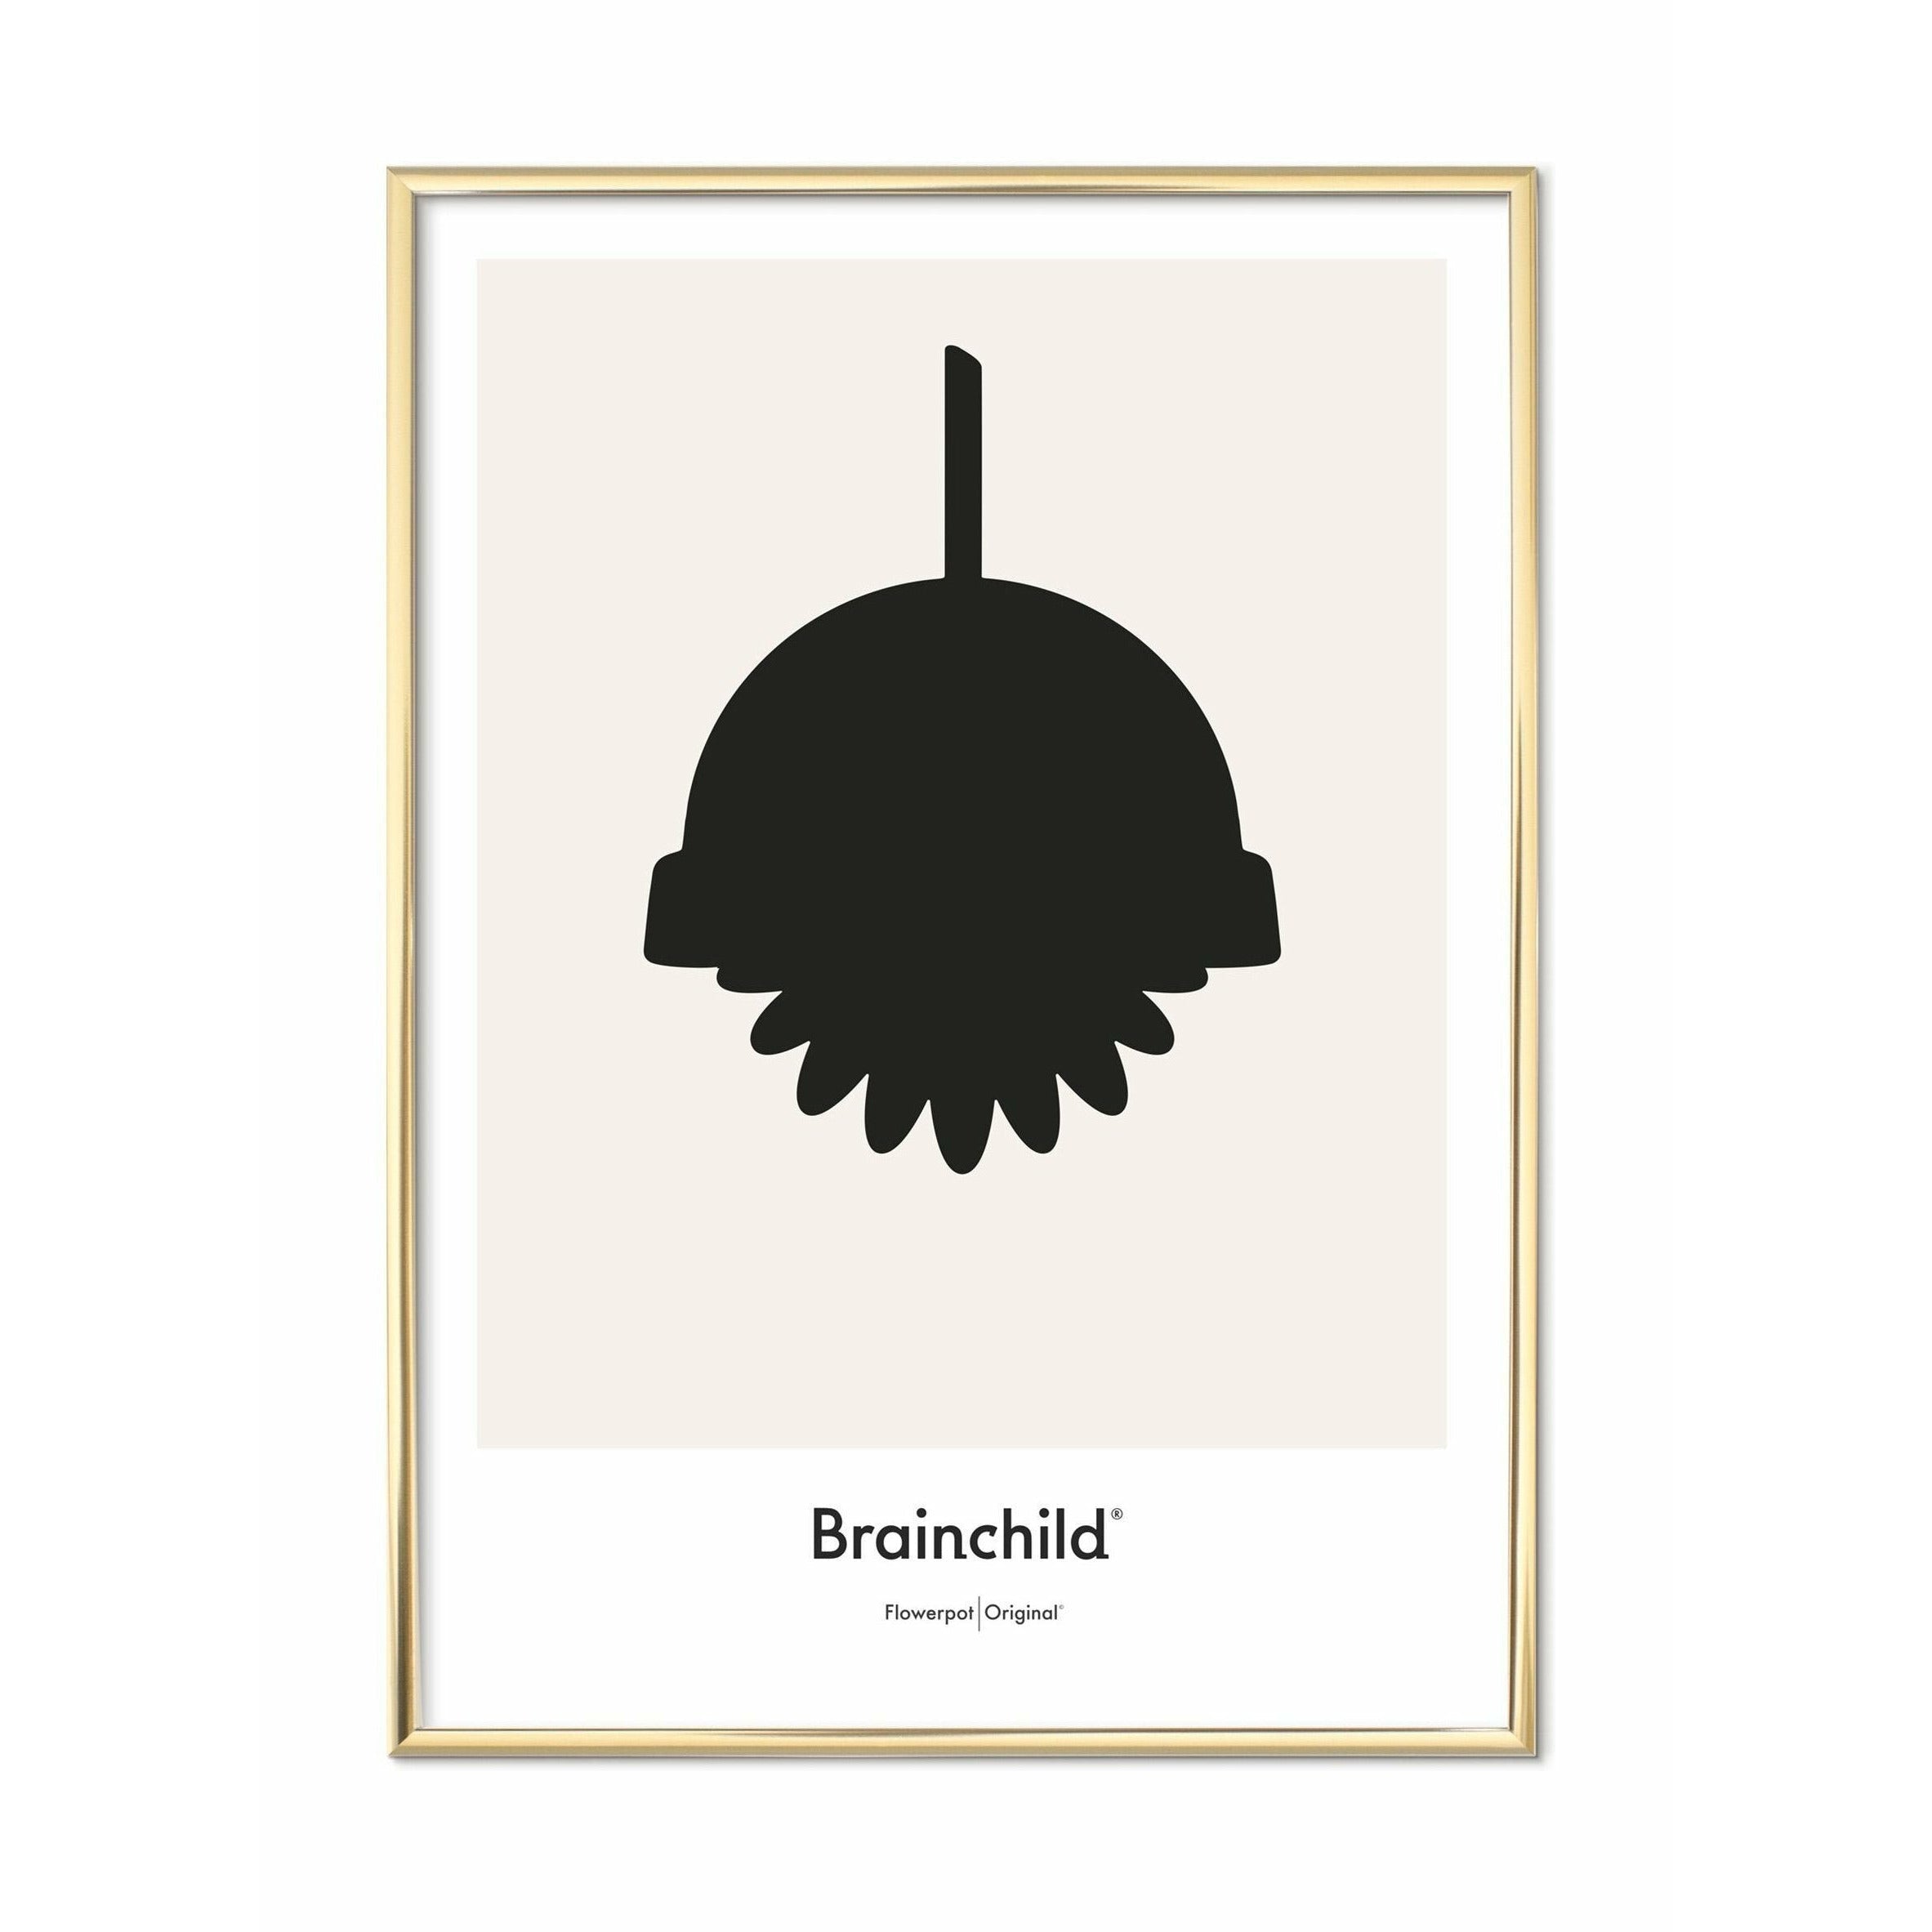 Brainchild Flowerpot Design Pictogram Poster, messing gekleurd frame 70 x100 cm, grijs